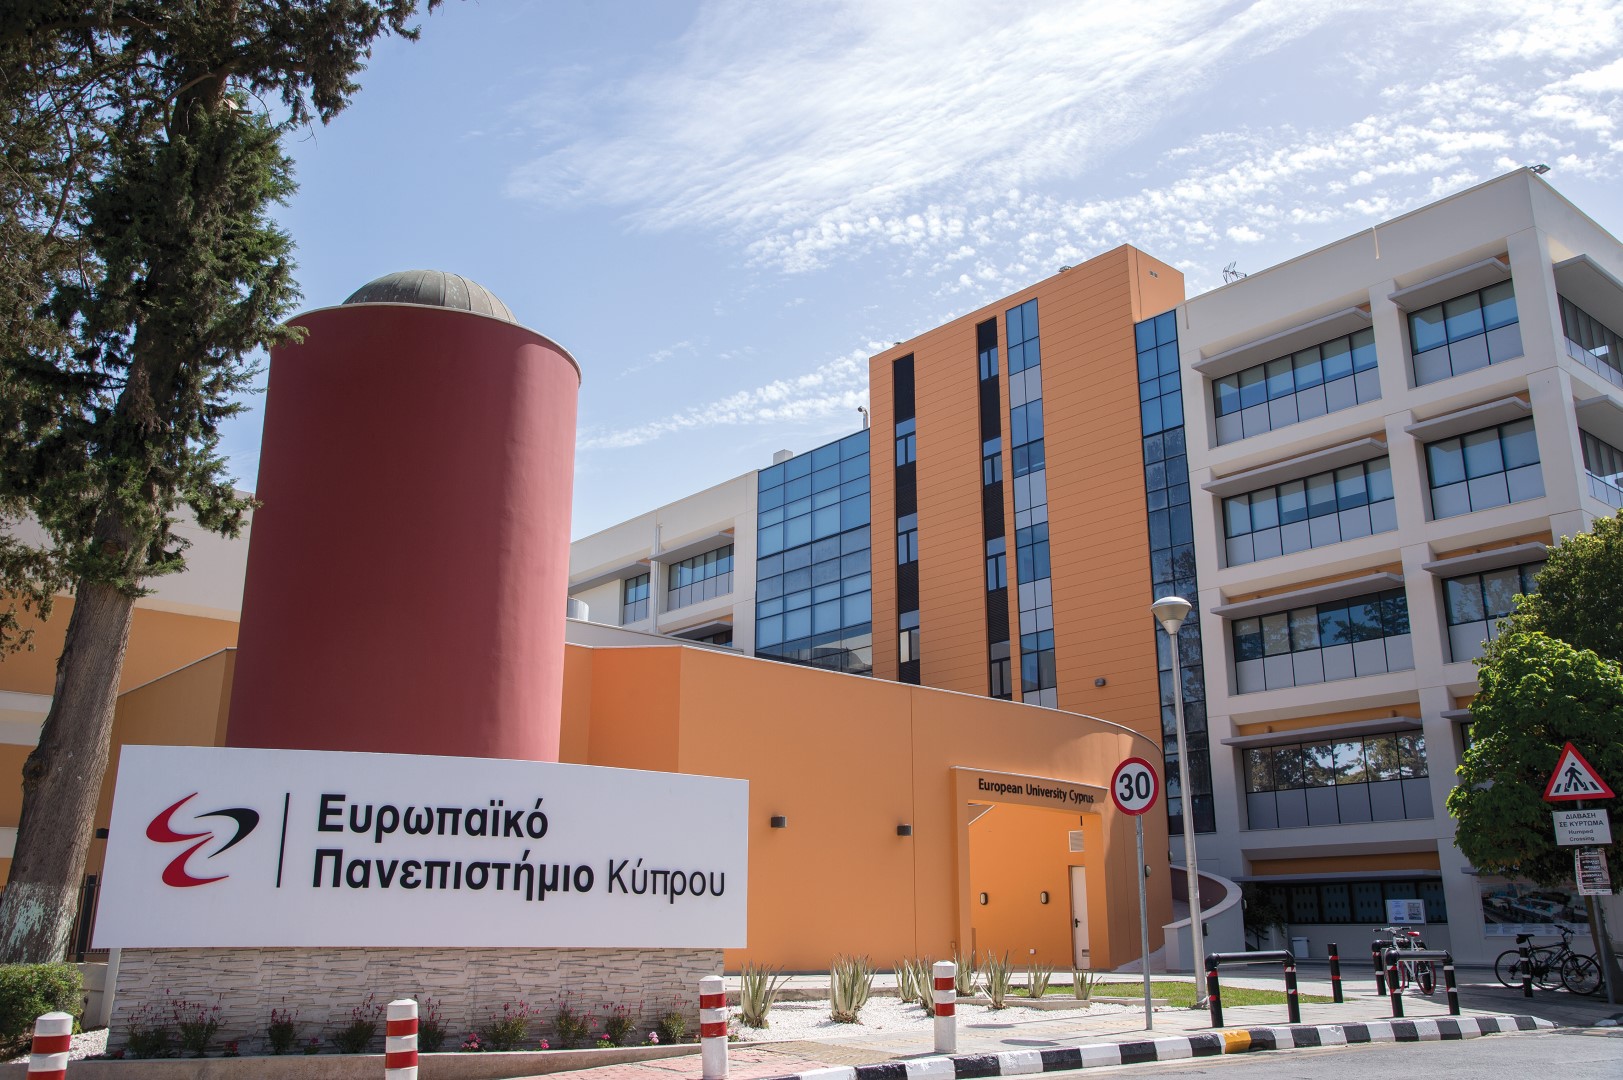 22η Ετήσια Διαδικτυακή Έκθεση Εργοδότησης και Πρακτικής Άσκησης του Ευρωπαϊκού Πανεπιστημίου Κύπρου